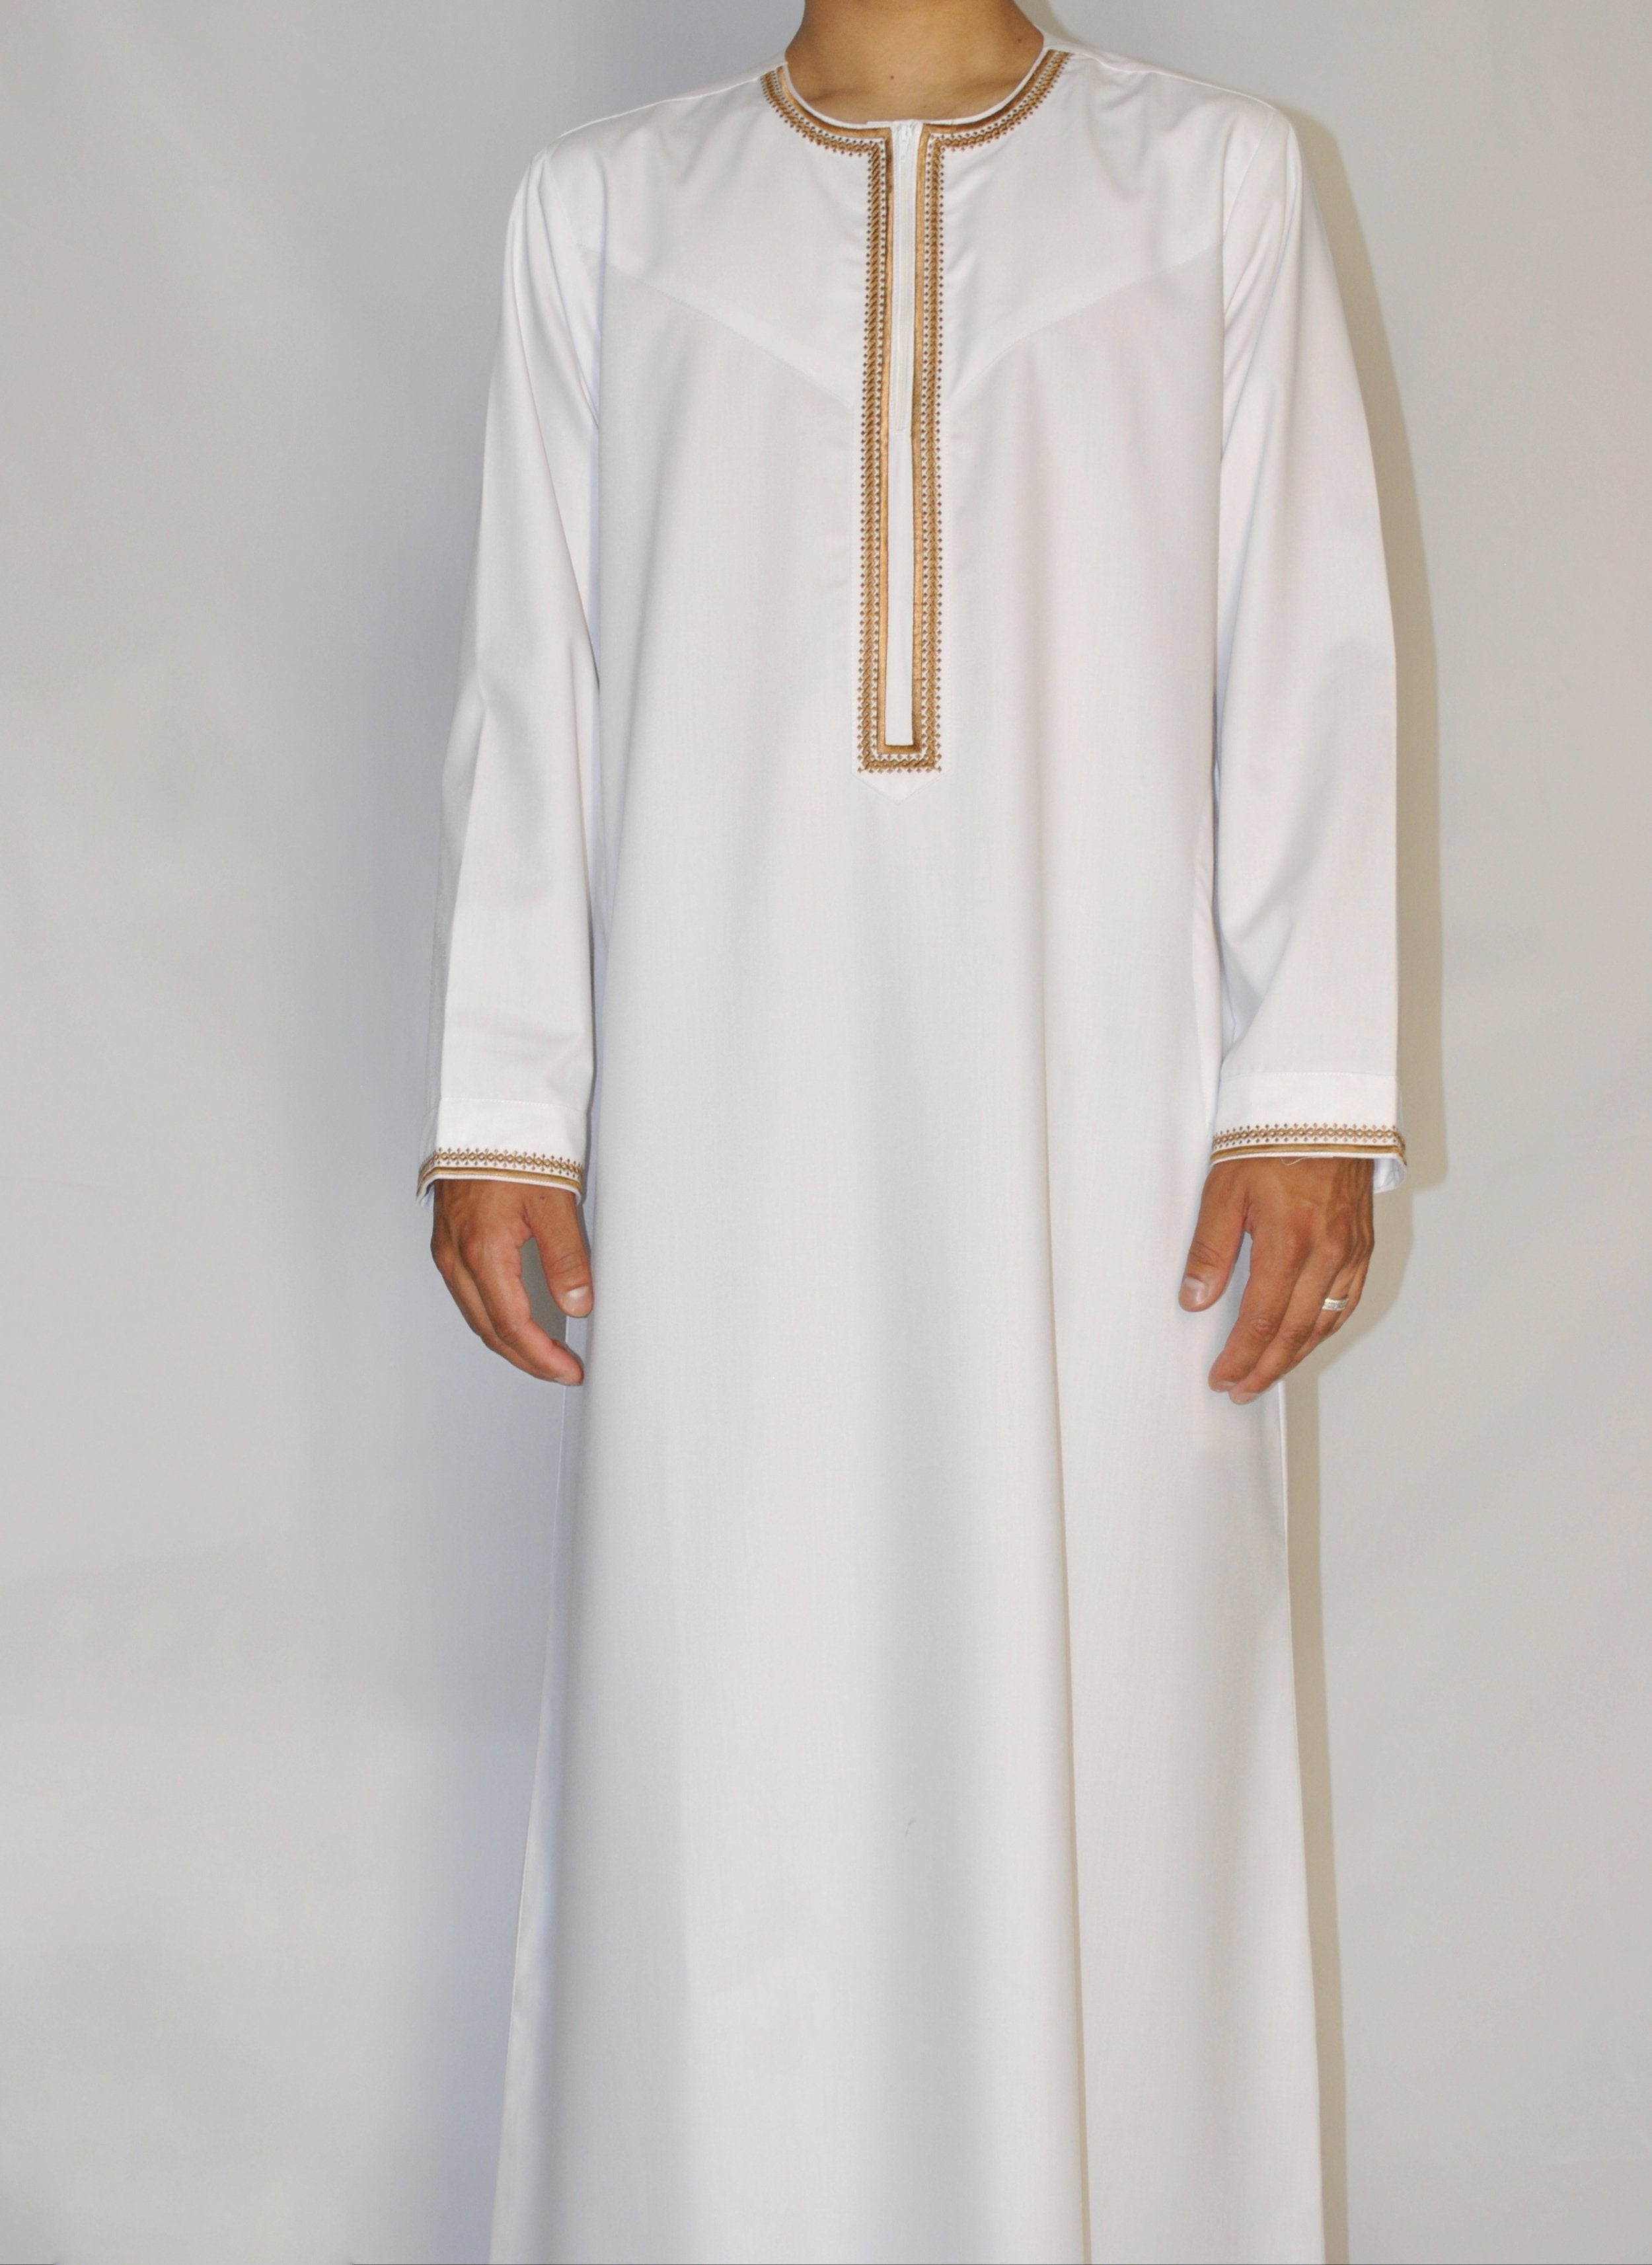 White & Gold Emirati Thobe